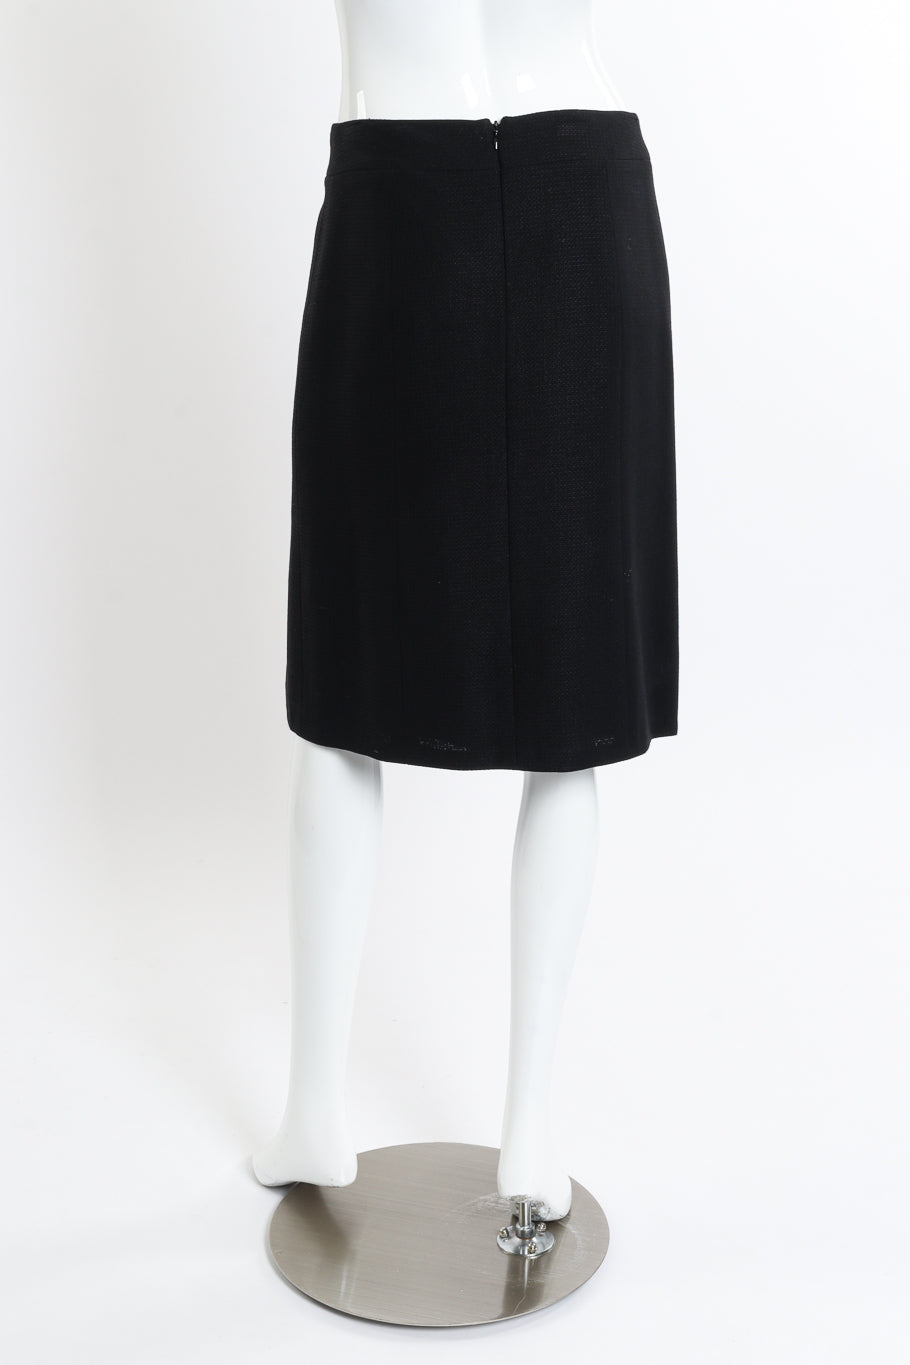 Chanel 2007C S/S Peplum Skirt Suit skirt back on mannequin @recessla